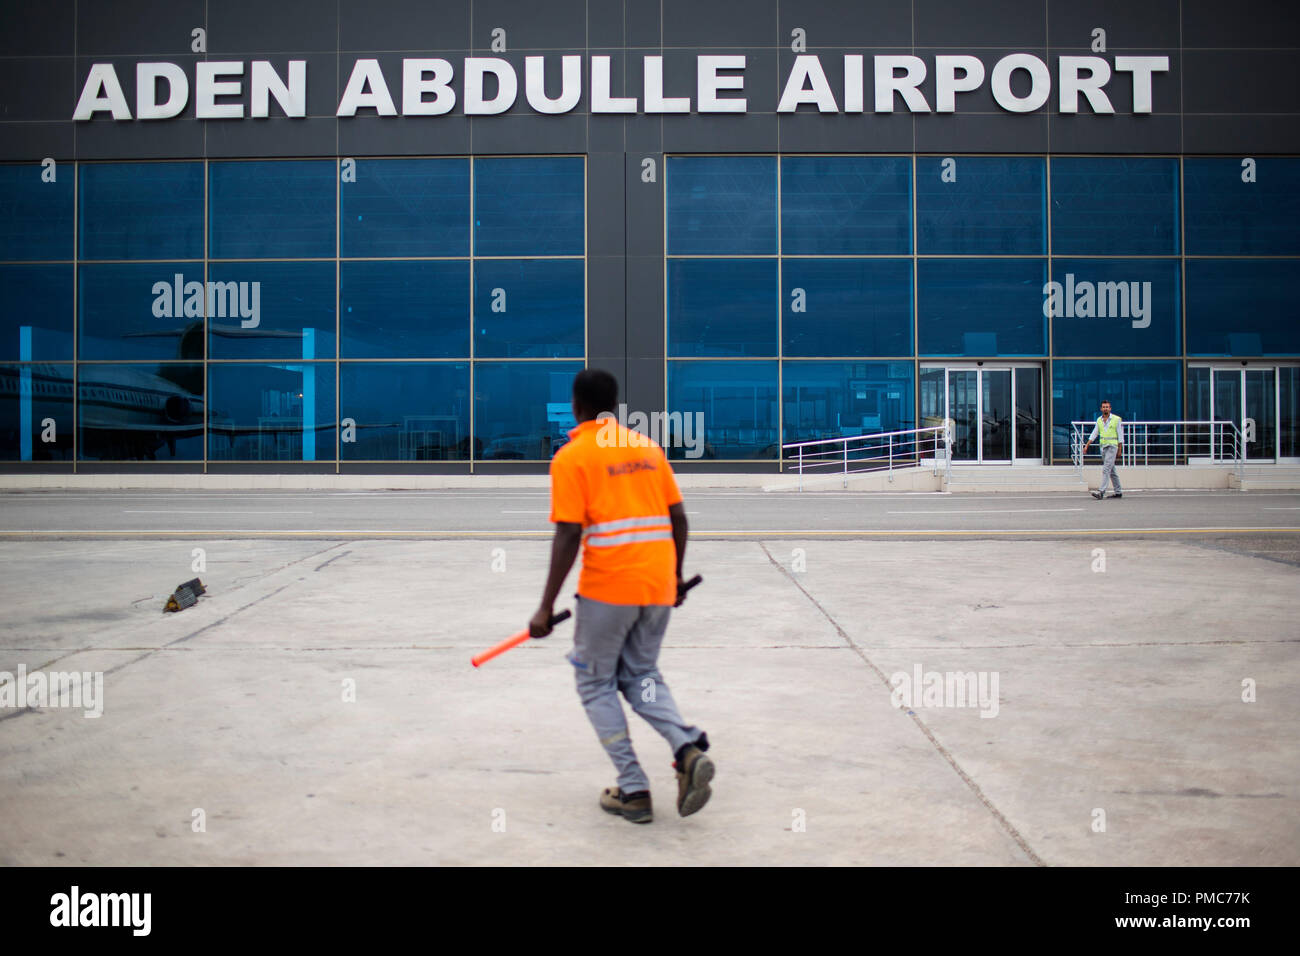 Un placier promenades à travers la piste par la nouvelle aérogare de l'aéroport intérieur d'Aden Abdulle la Mission de l'Union africaine en Somalie (AMISOM) bas Banque D'Images